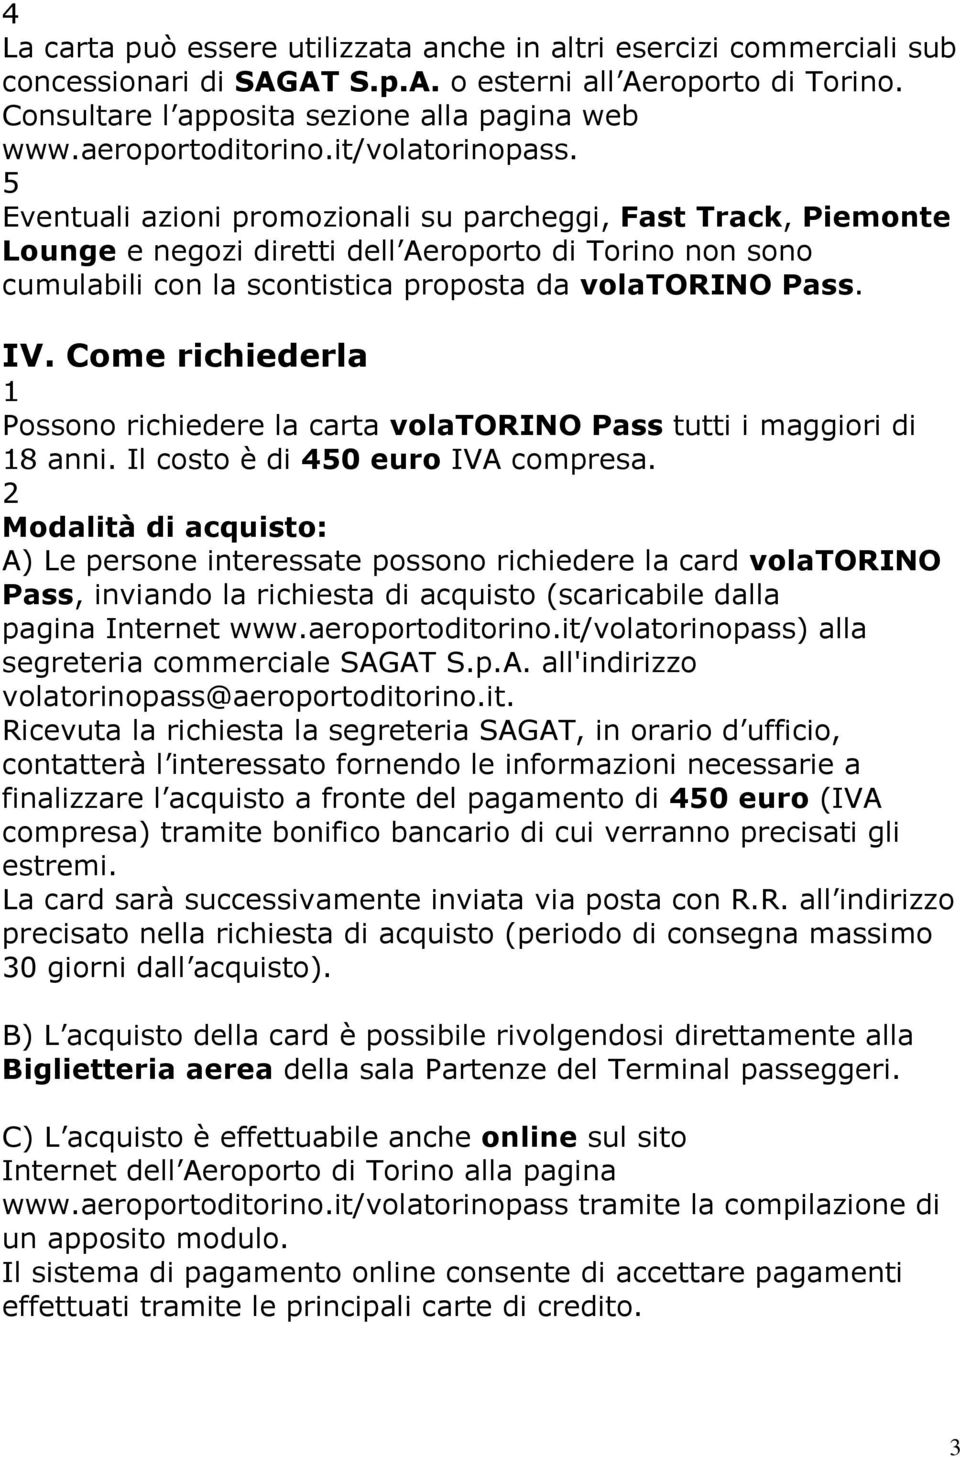 5 Eventuali azioni promozionali su parcheggi, Fast Track, Piemonte Lounge e negozi diretti dell Aeroporto di Torino non sono cumulabili con la scontistica proposta da volatorino Pass. IV.